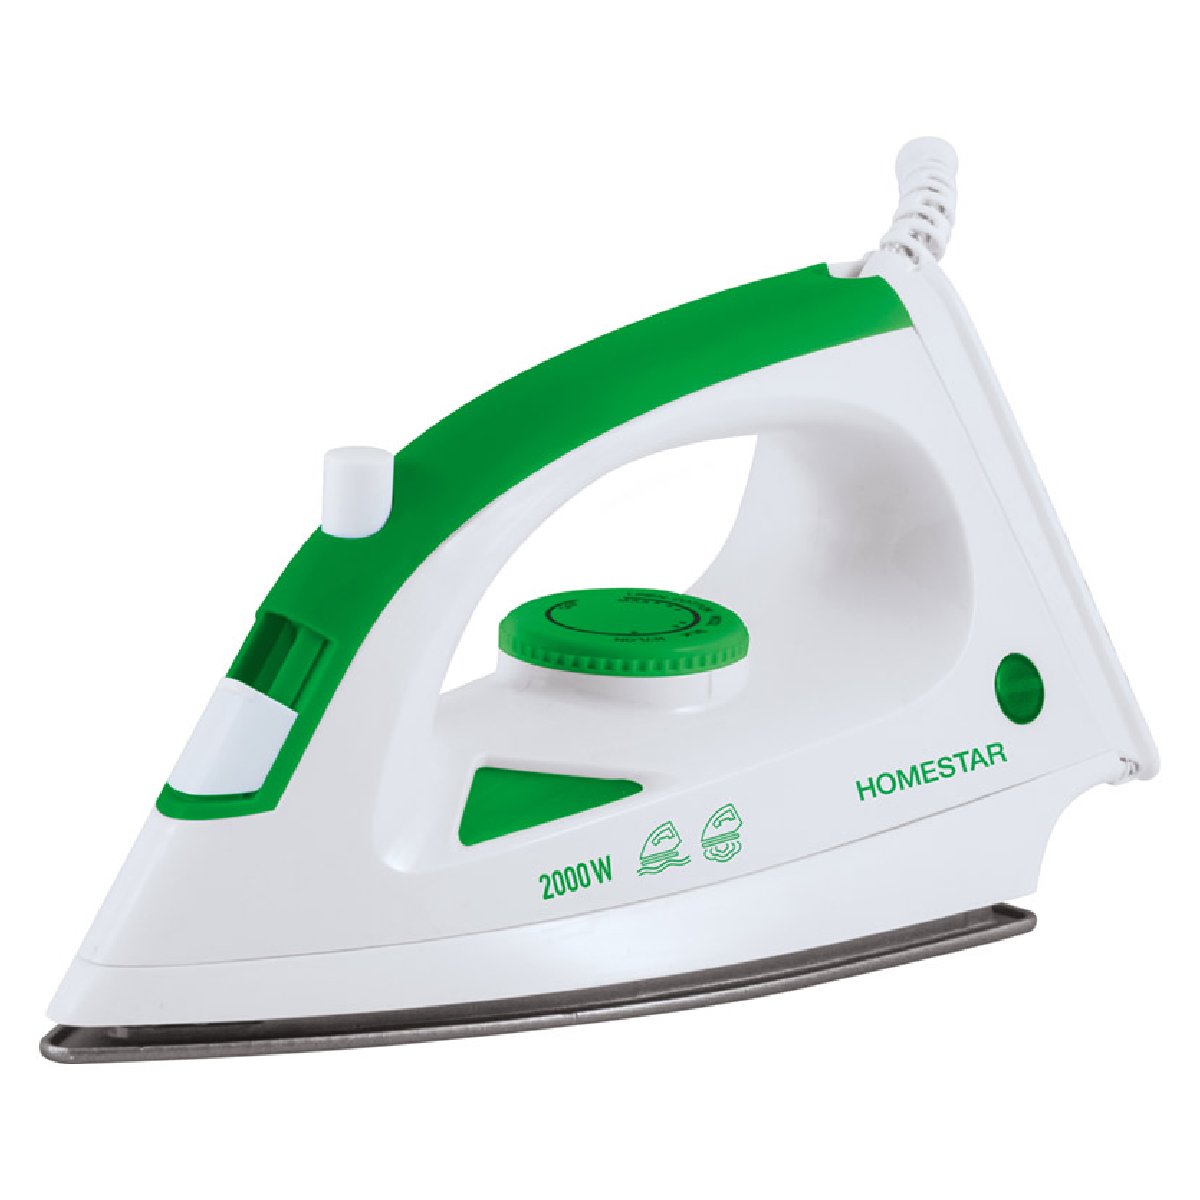 Утюг HomeStar HS-4001 (бело-зеленый, 2000Вт) (004837)Купить